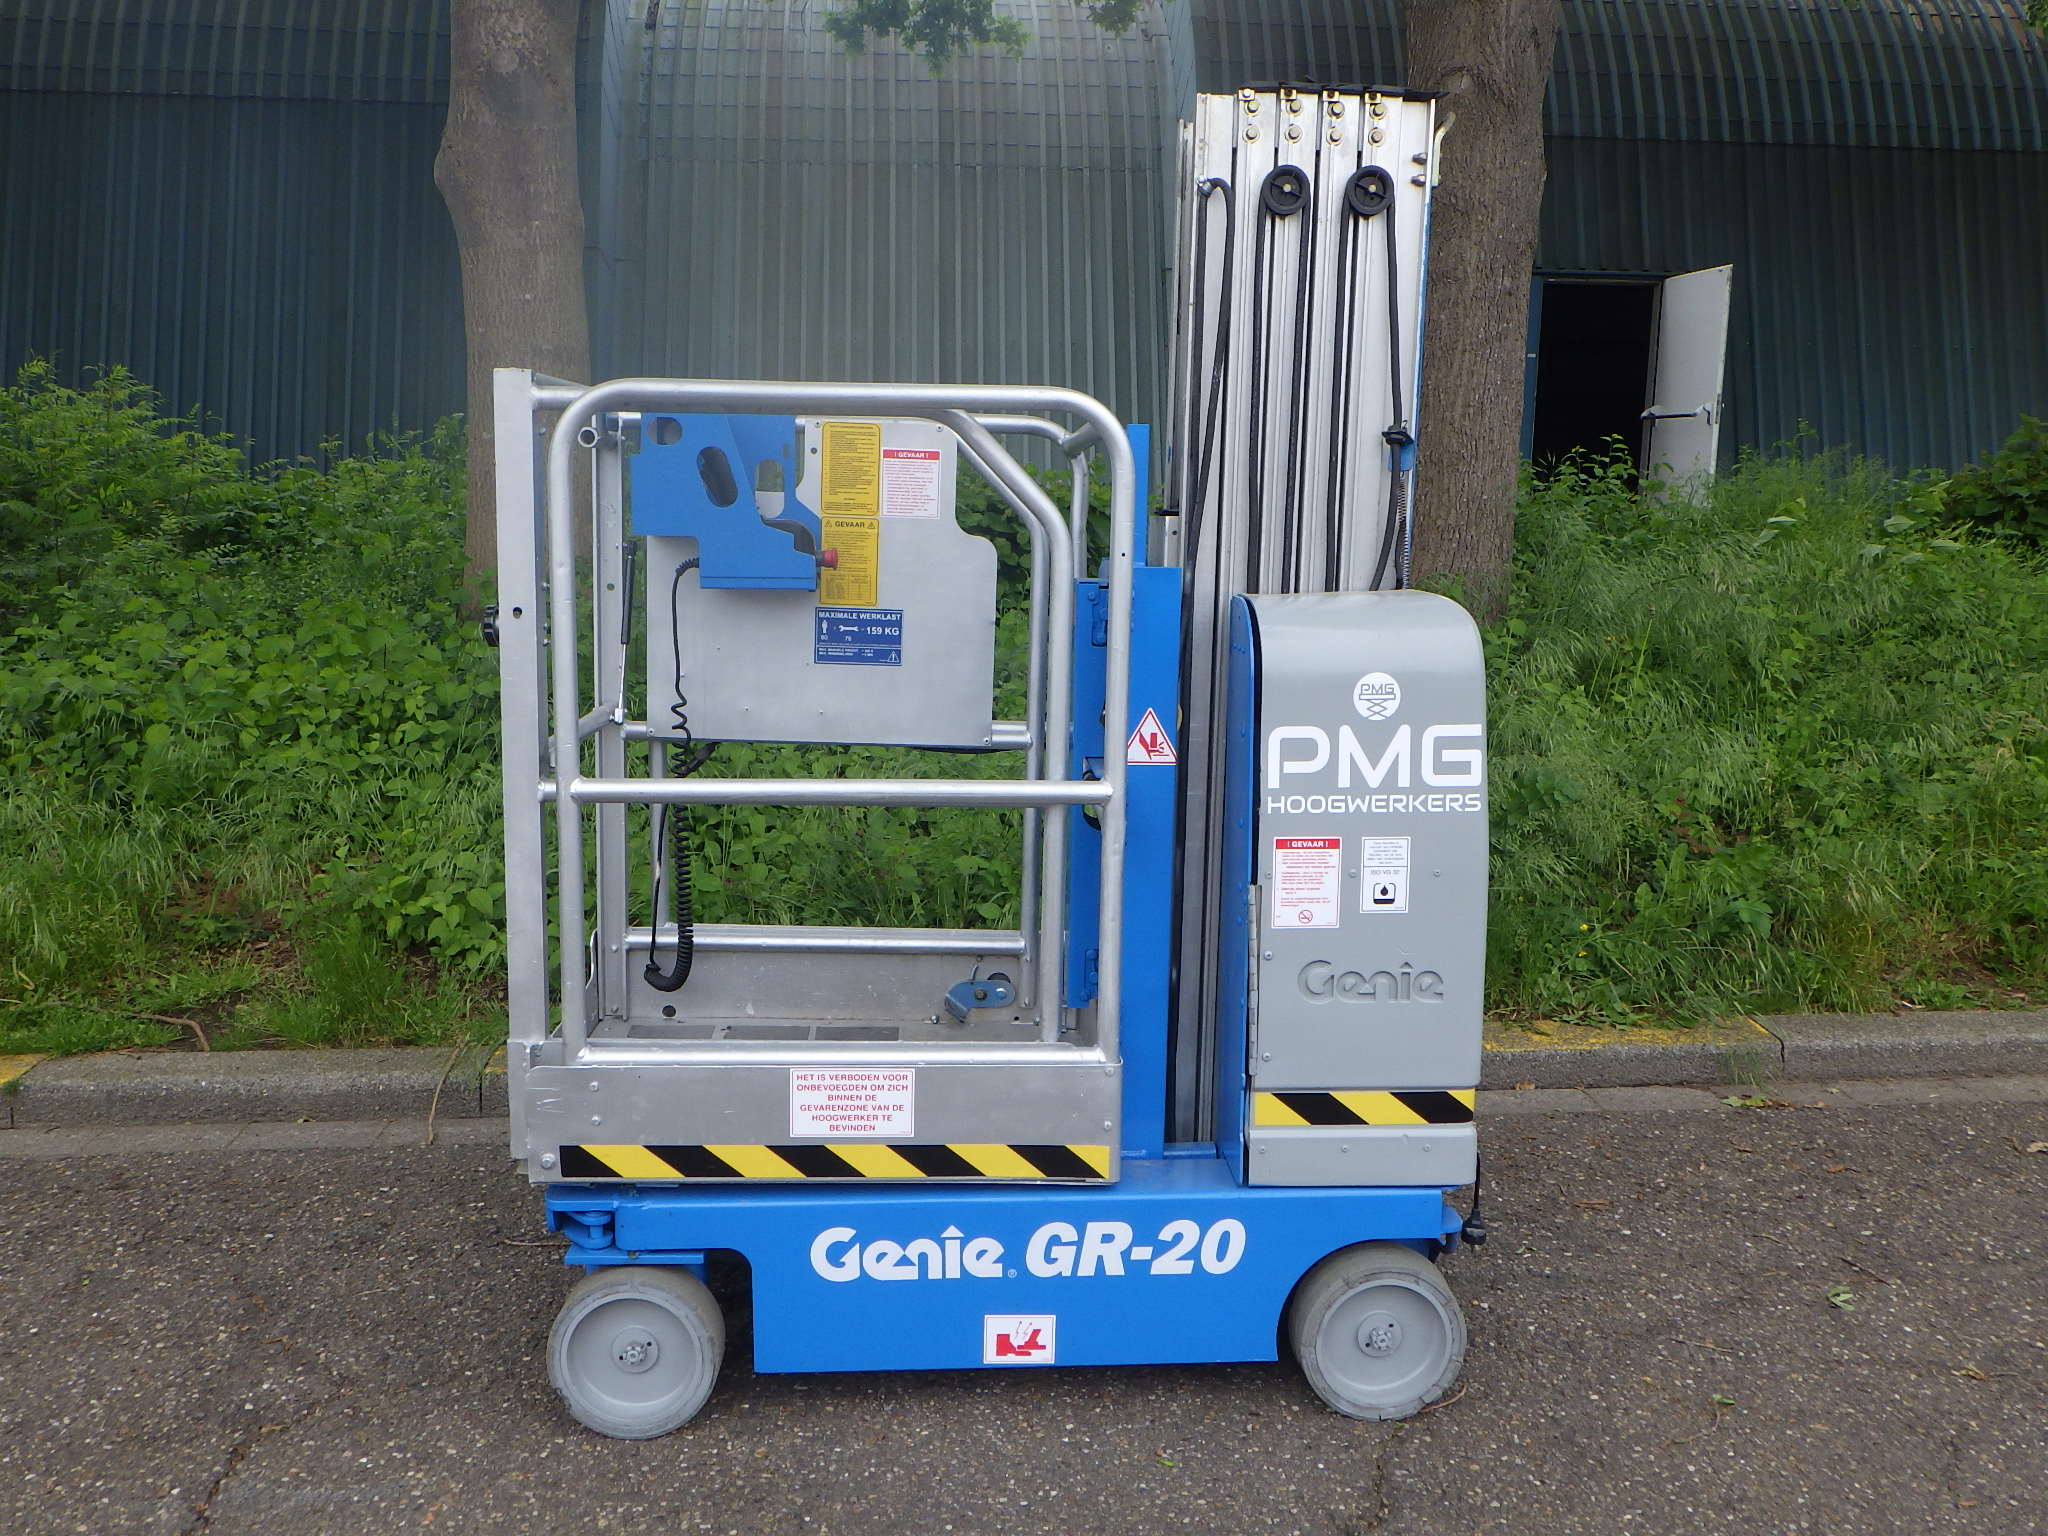 Genie GR-20